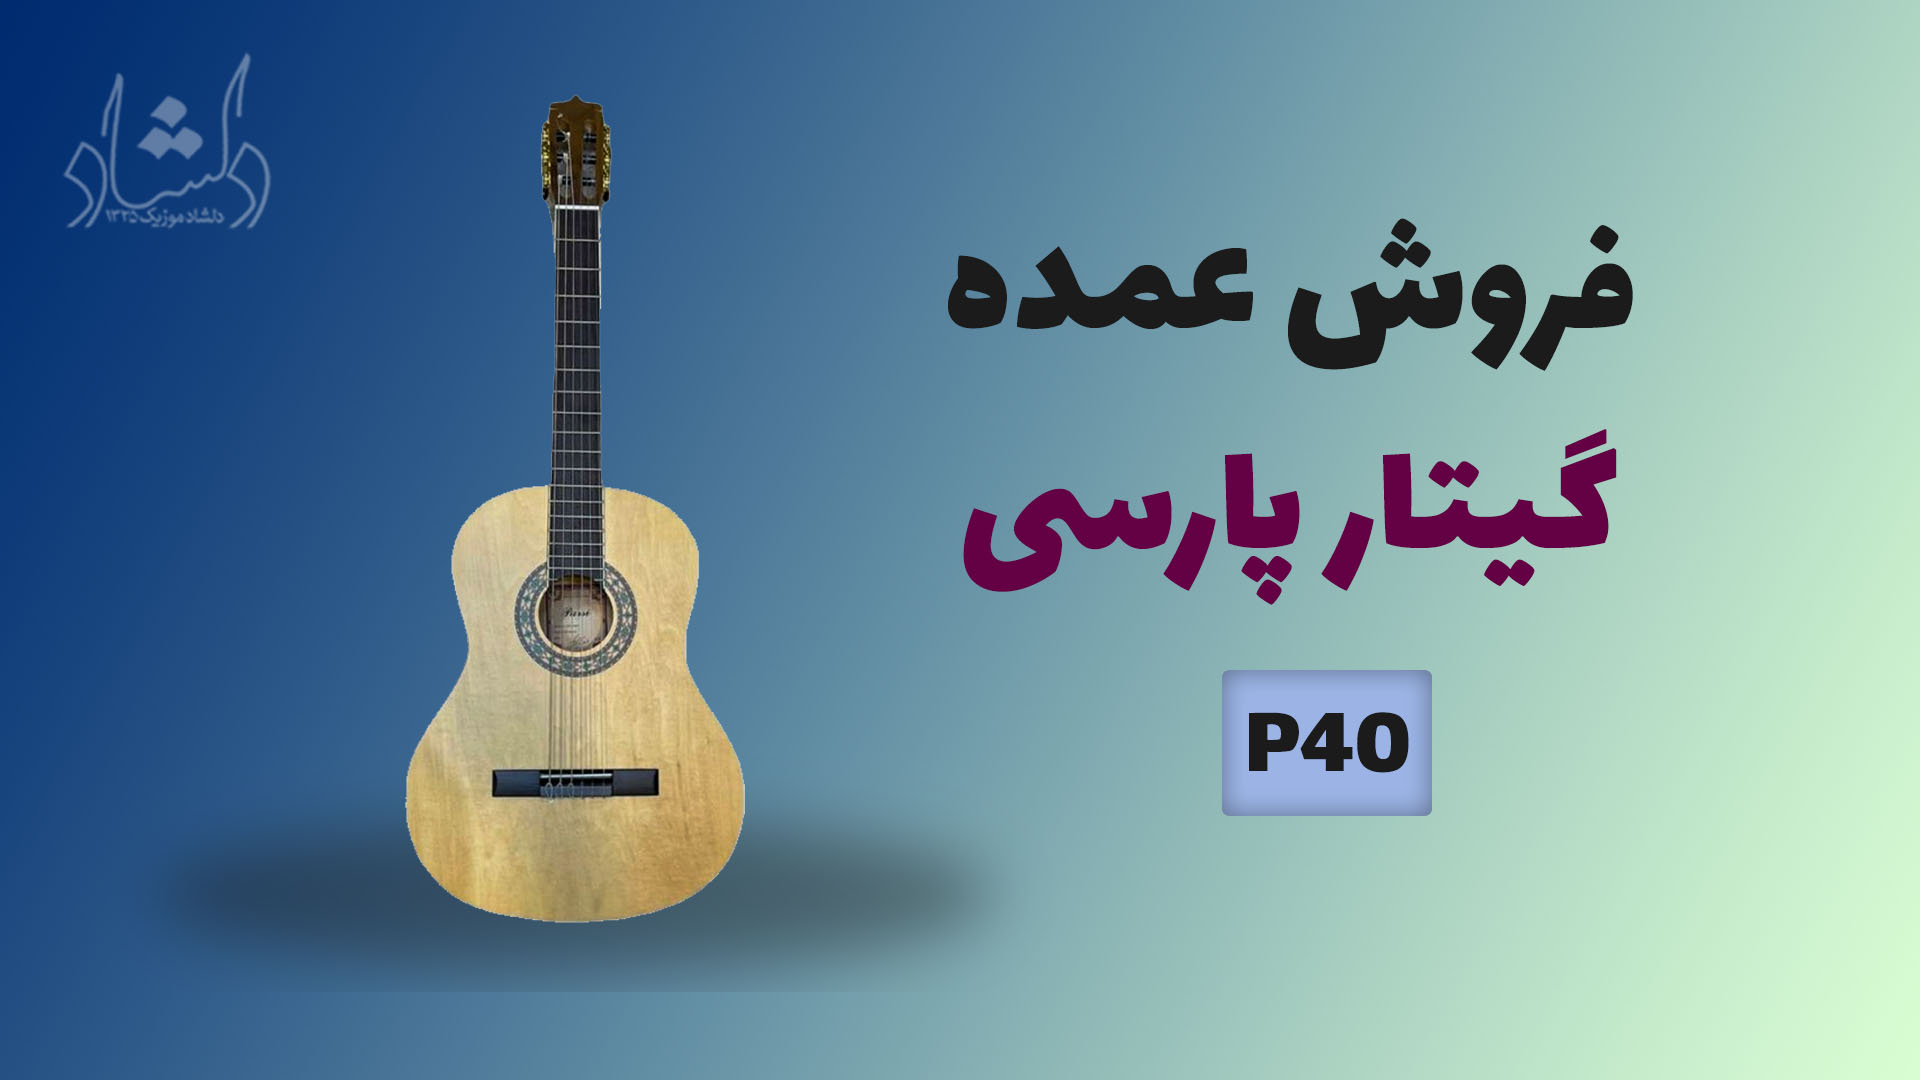 خرید عمده گیتار پارسی parsi guitar P40 - (قیمت همکاری و فروش عمده)